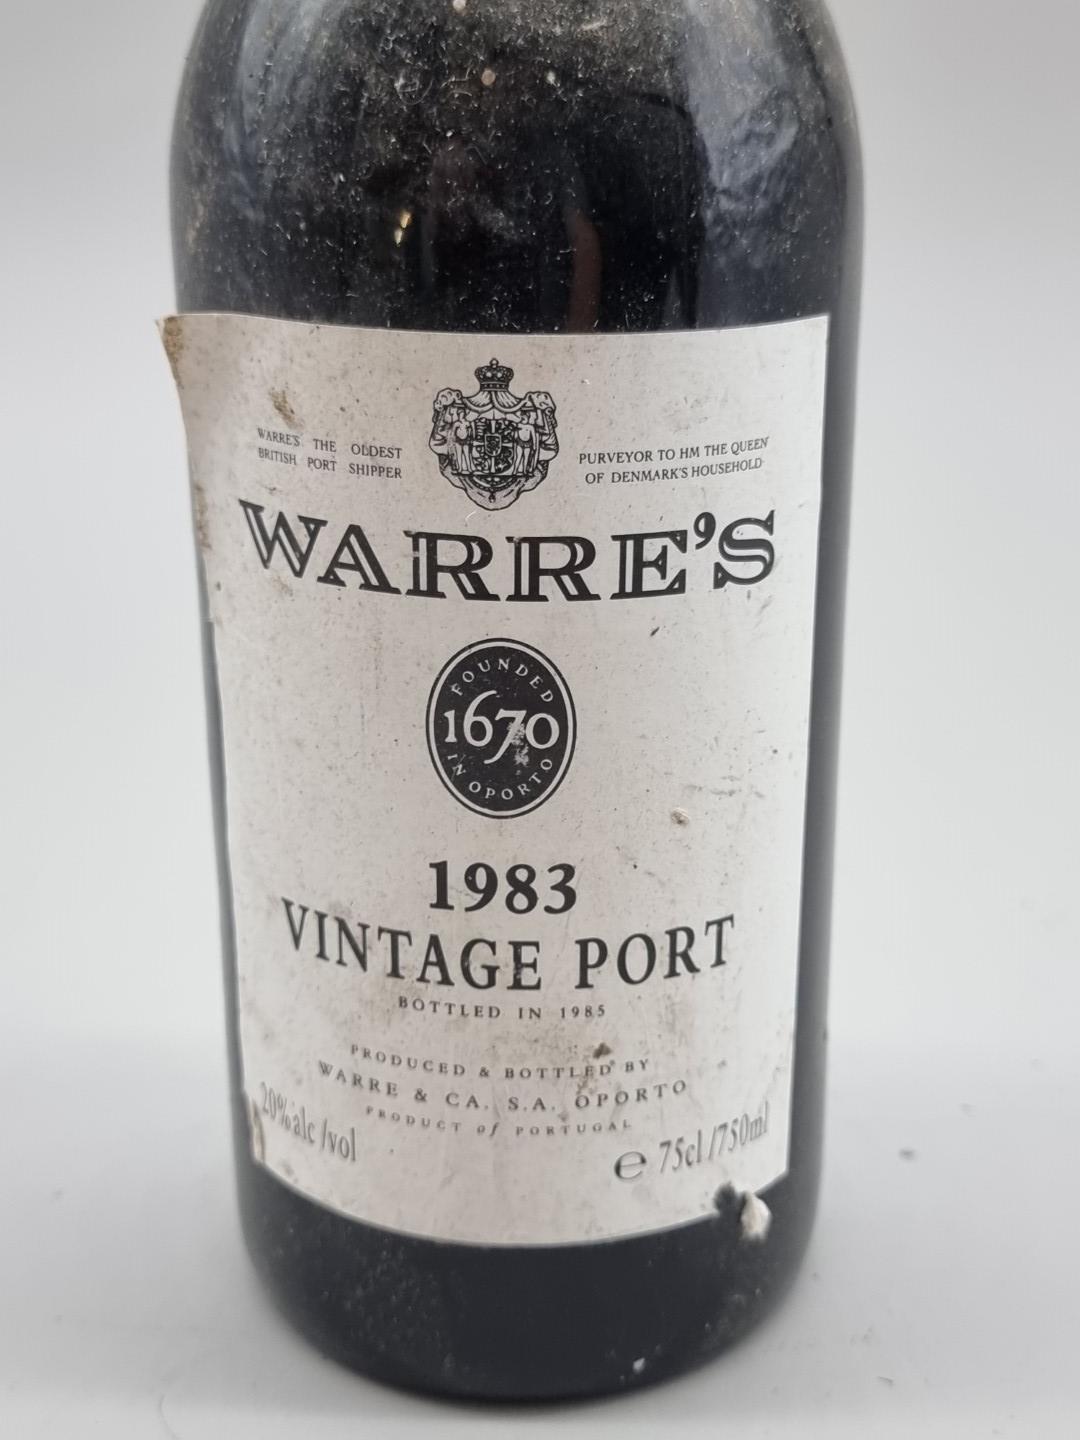 A 75cl bottle of Warre's 1983 Vintage Port, bottled in 1985. - Image 3 of 3